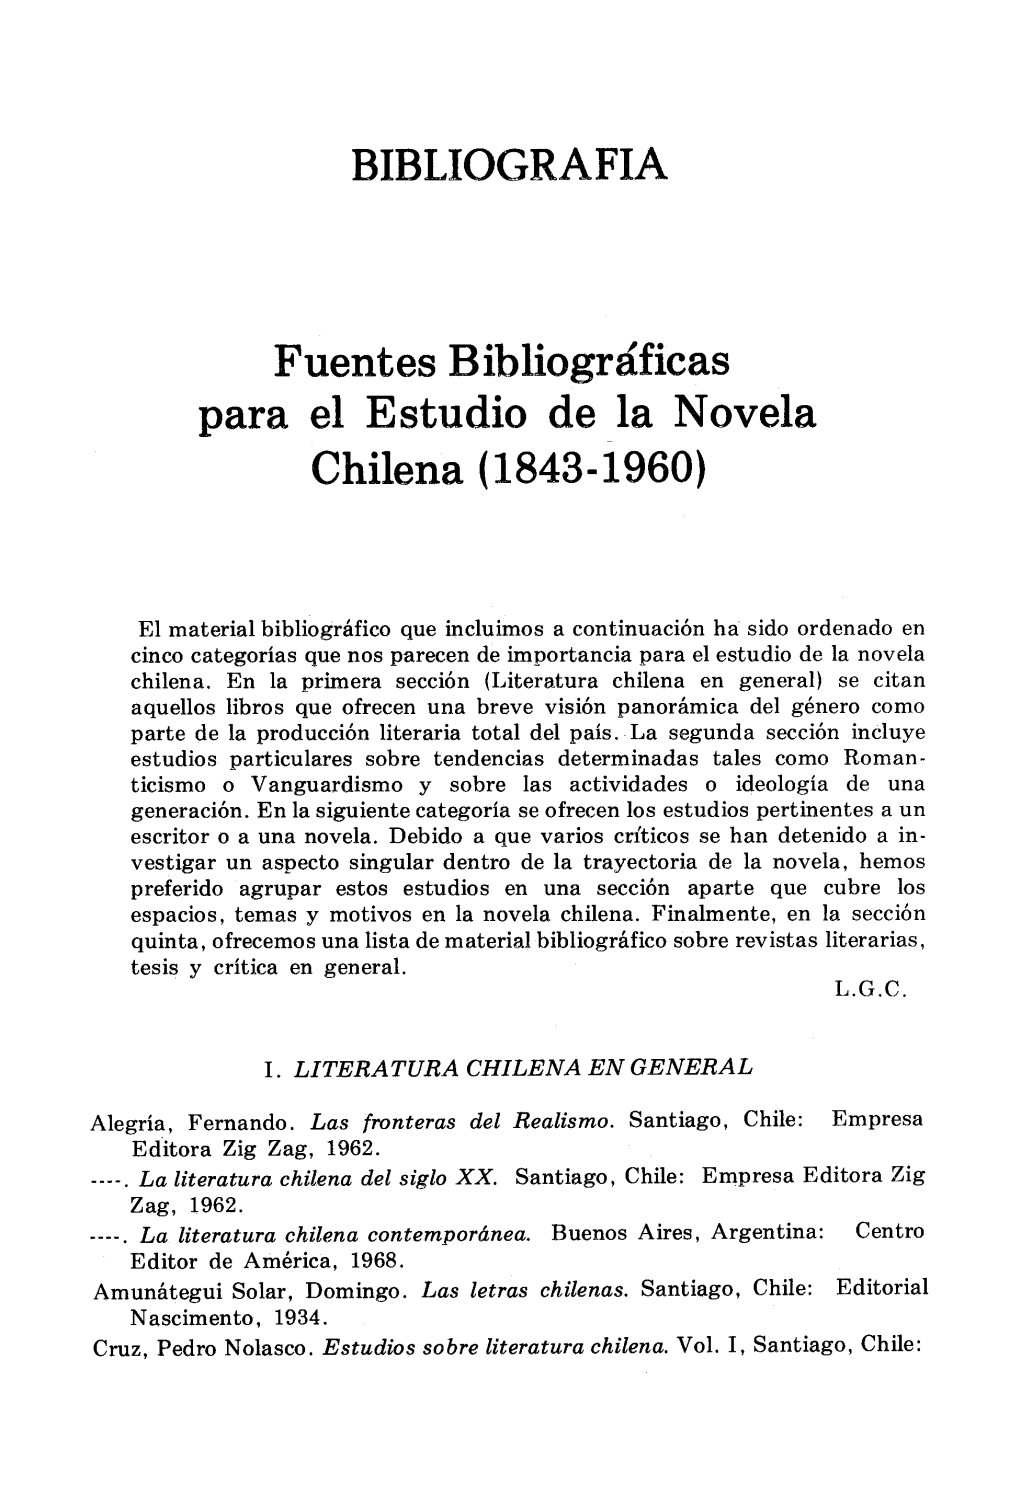 BIBLIOGRAFIA Fuentes B Ibliogra